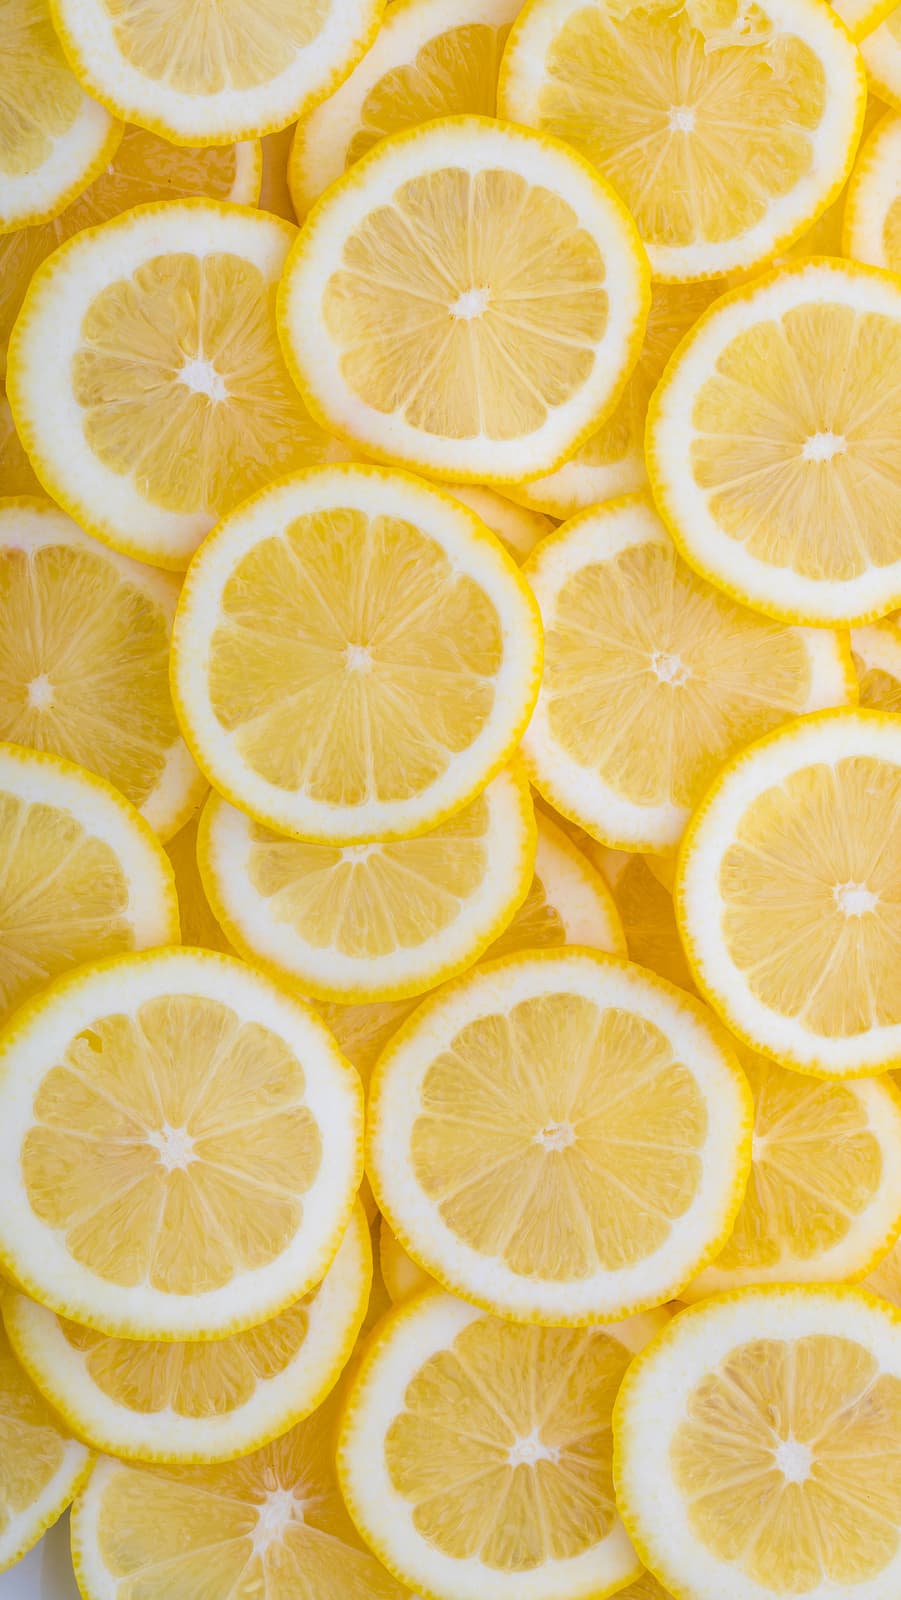 Pile of lemon slices